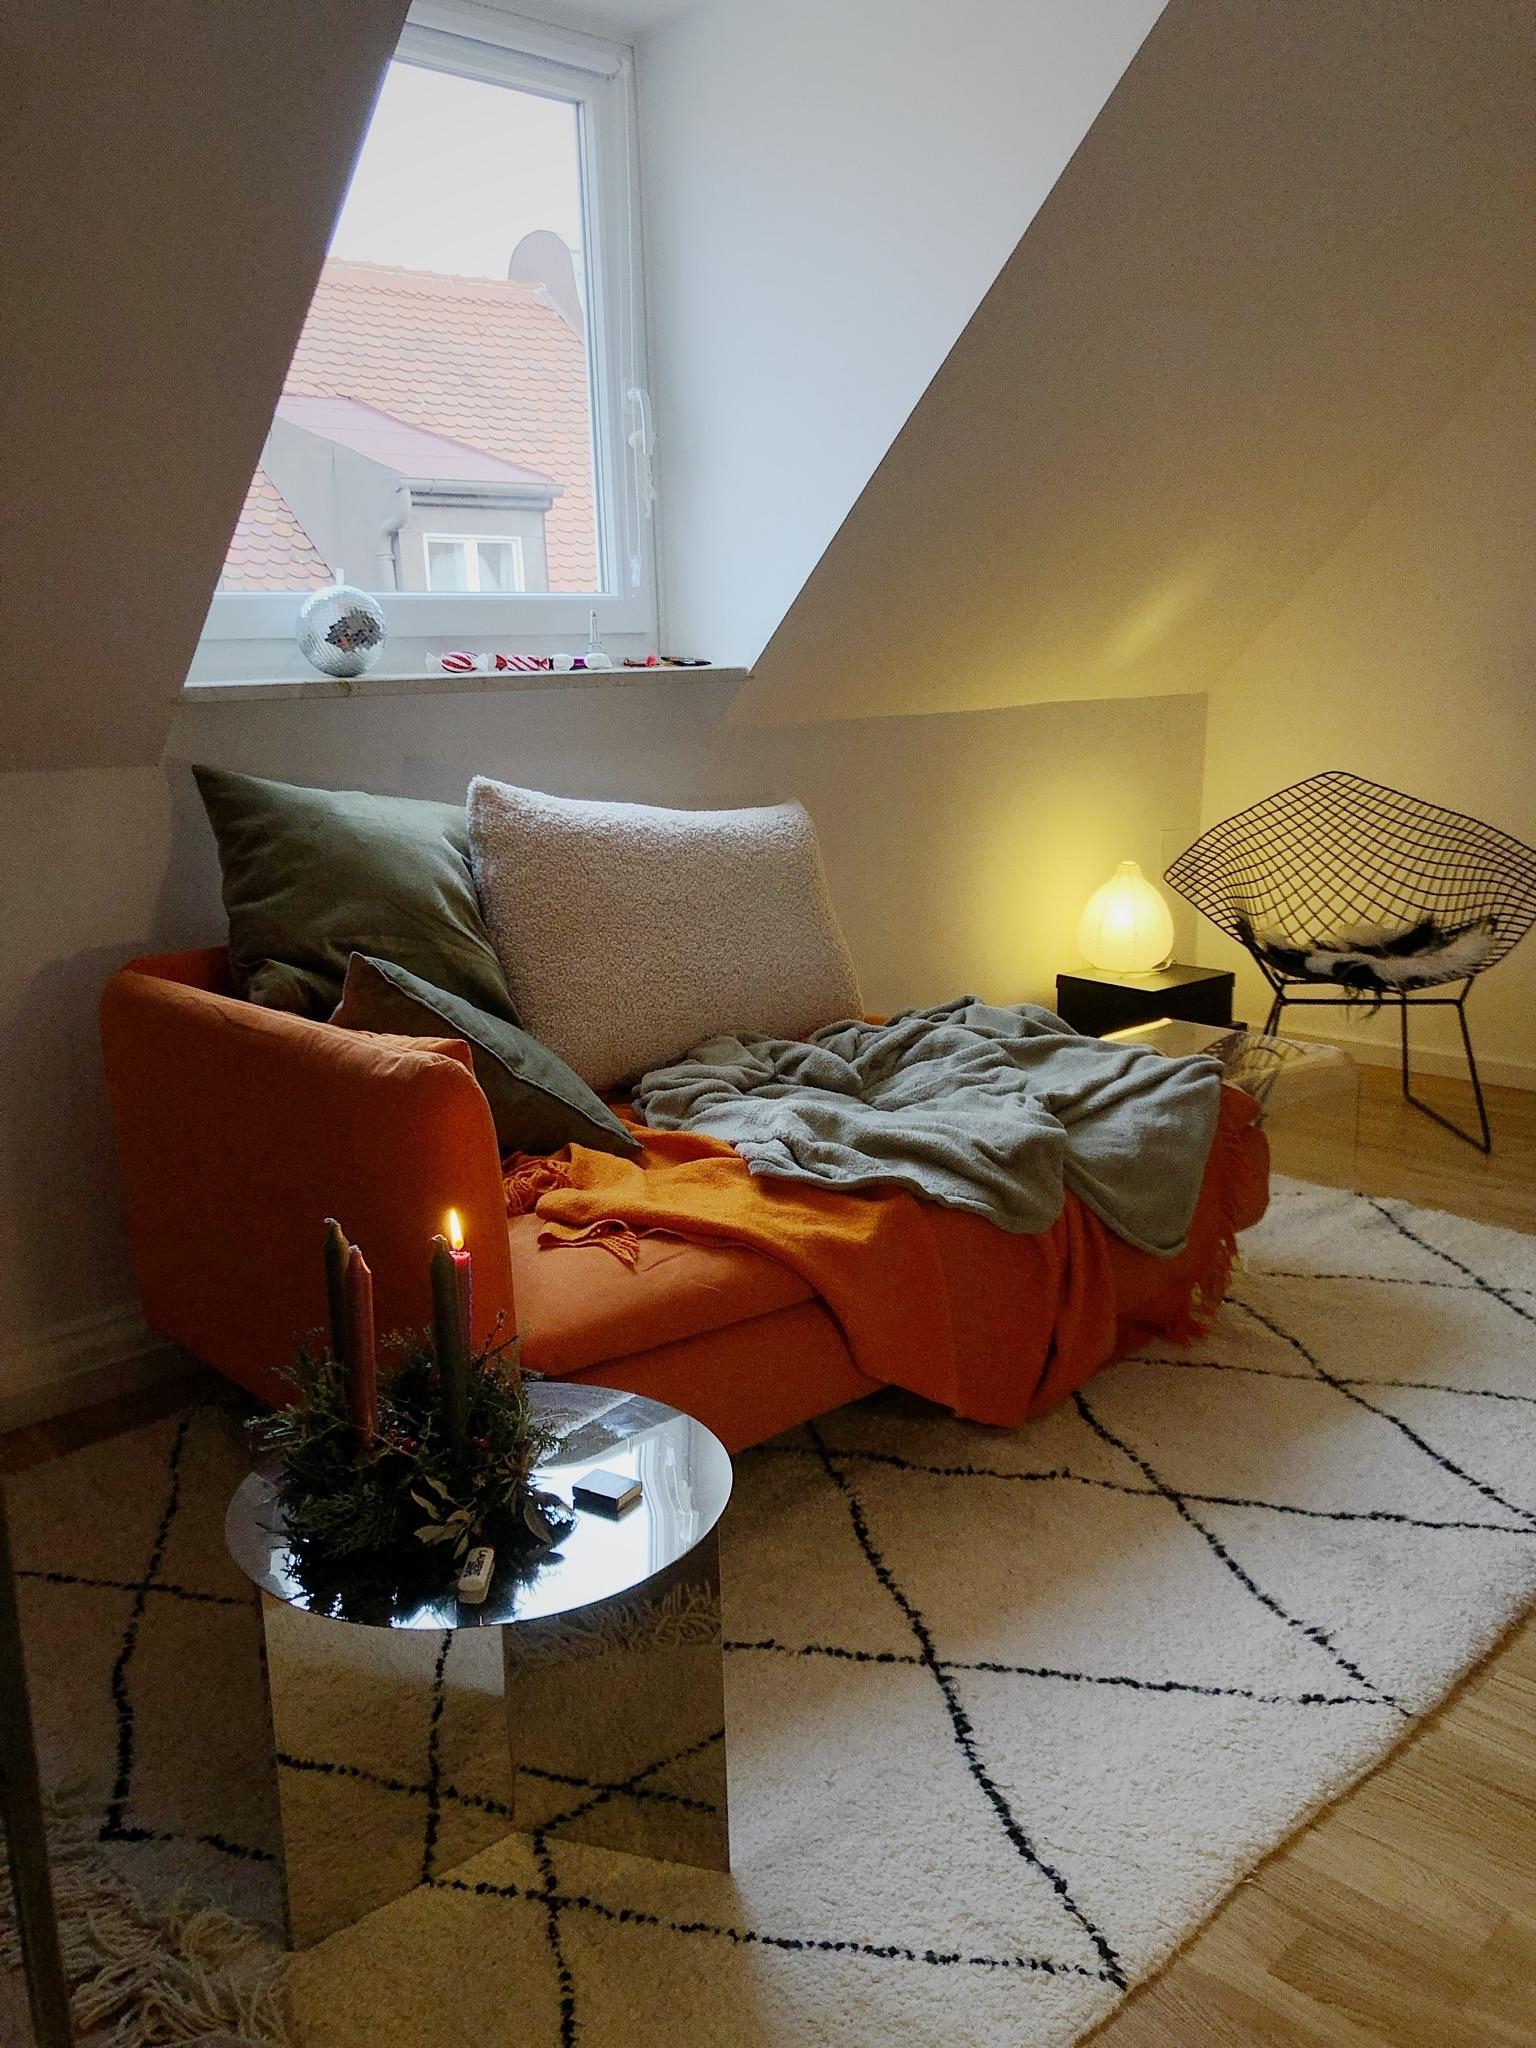 #december #moody #munich #apartment #interior #interiordesign #livingroom #wohnzimmer #smallapartment #couchstyle #klein